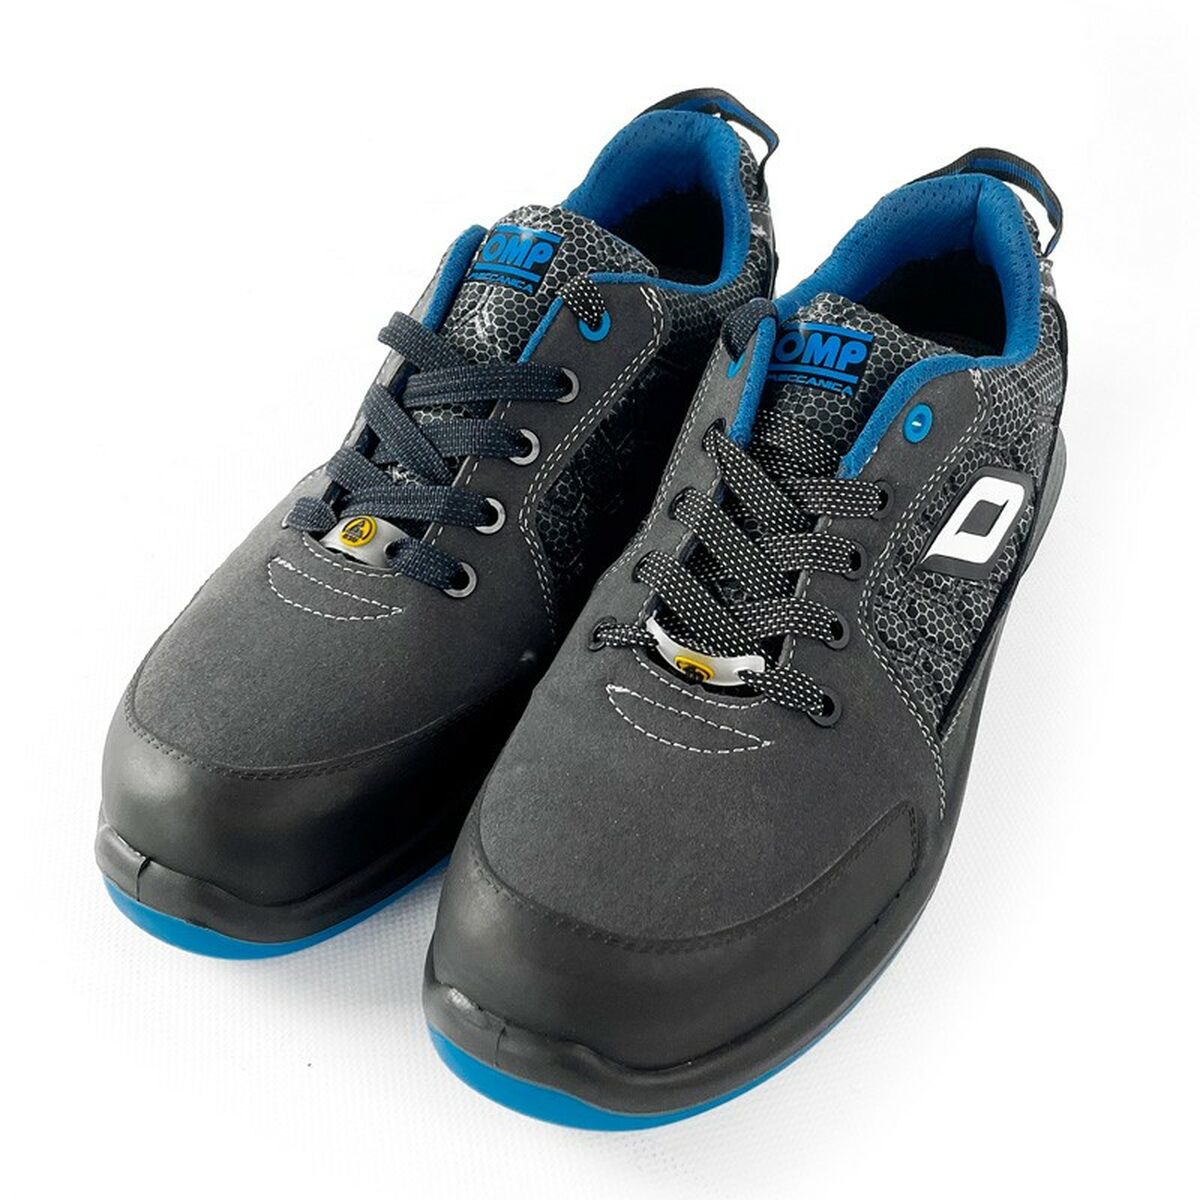 Chaussures de sécurité OMP PRO SPORT S1P Noir/Bleu Bleu (36)